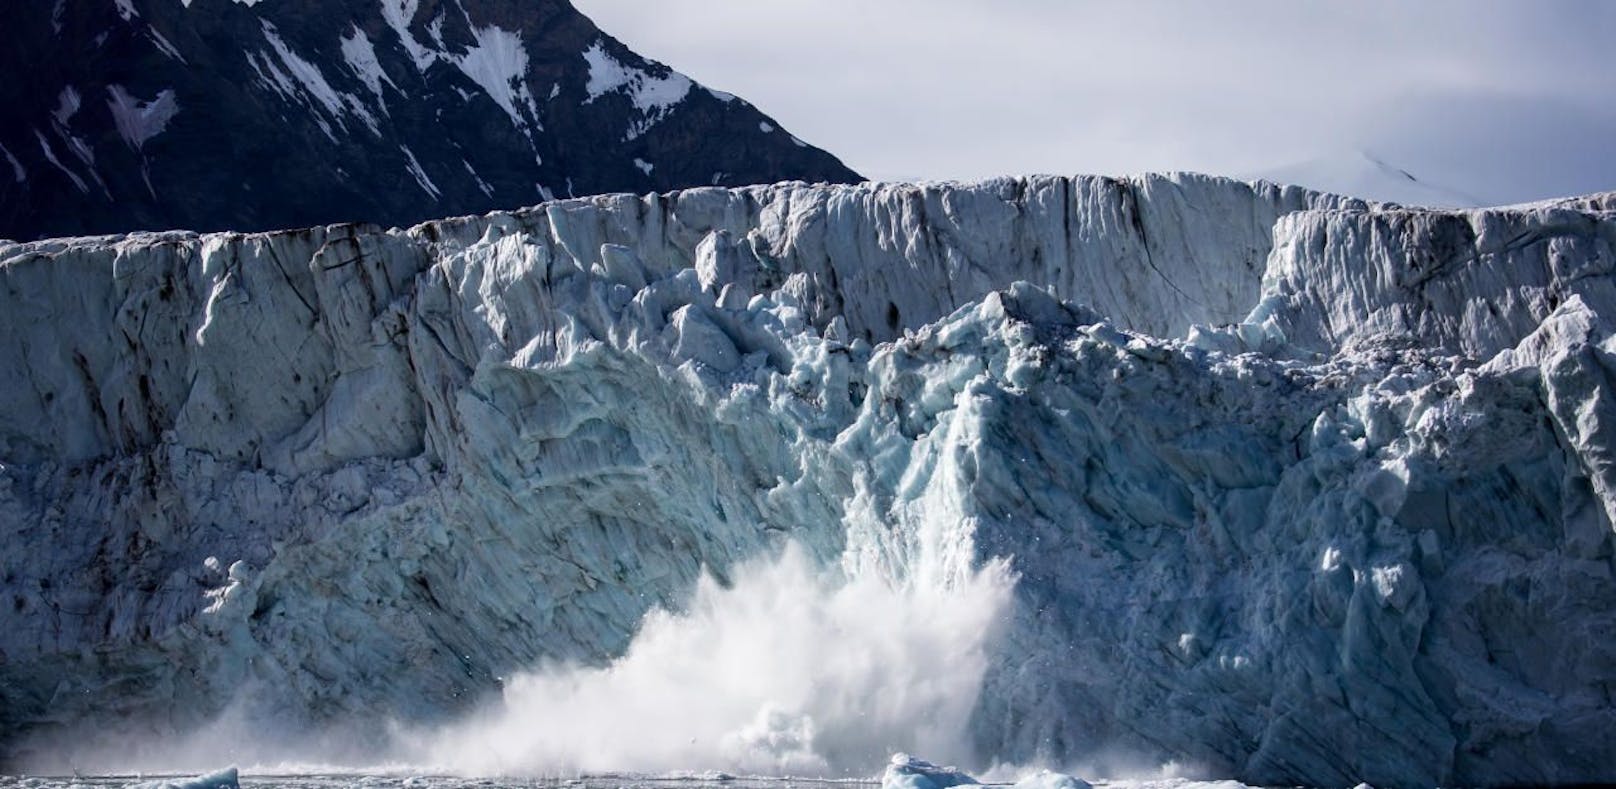 Der Gletscher brach ab, als der Mann drauf stand. (Symbolfoto)